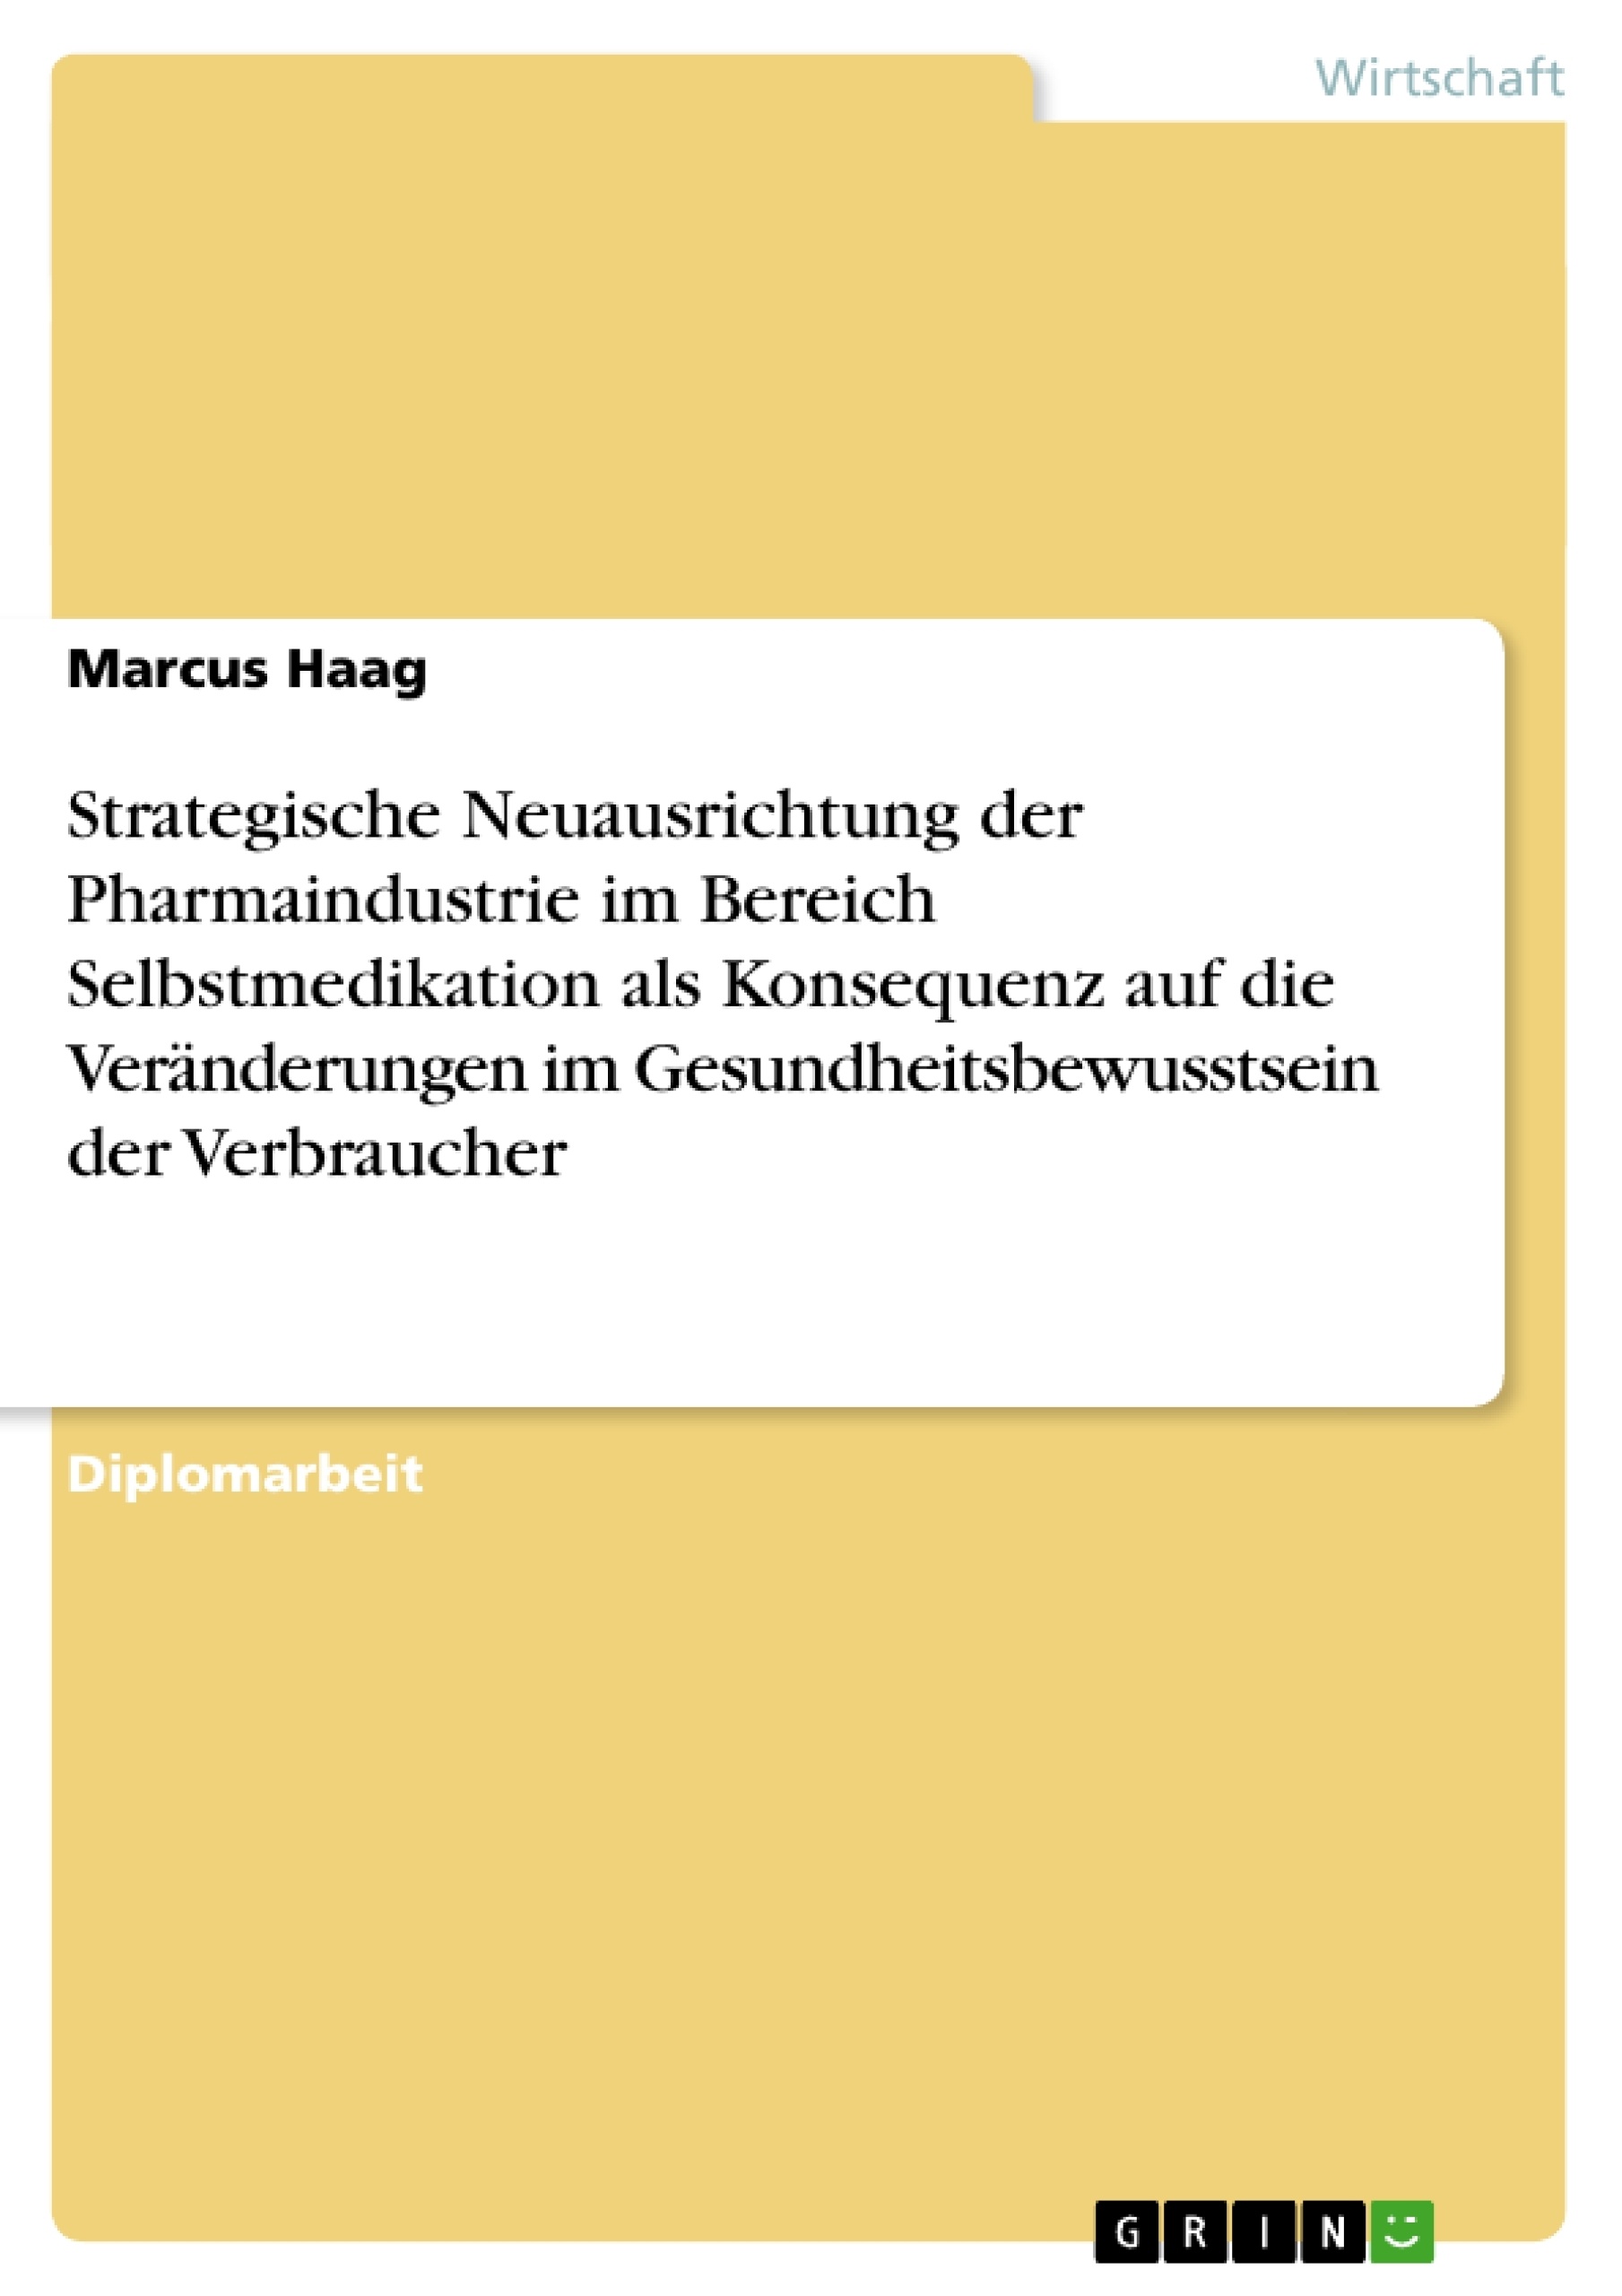 Titel: Strategische Neuausrichtung der Pharmaindustrie im Bereich Selbstmedikation als Konsequenz auf die Veränderungen im Gesundheitsbewusstsein der Verbraucher